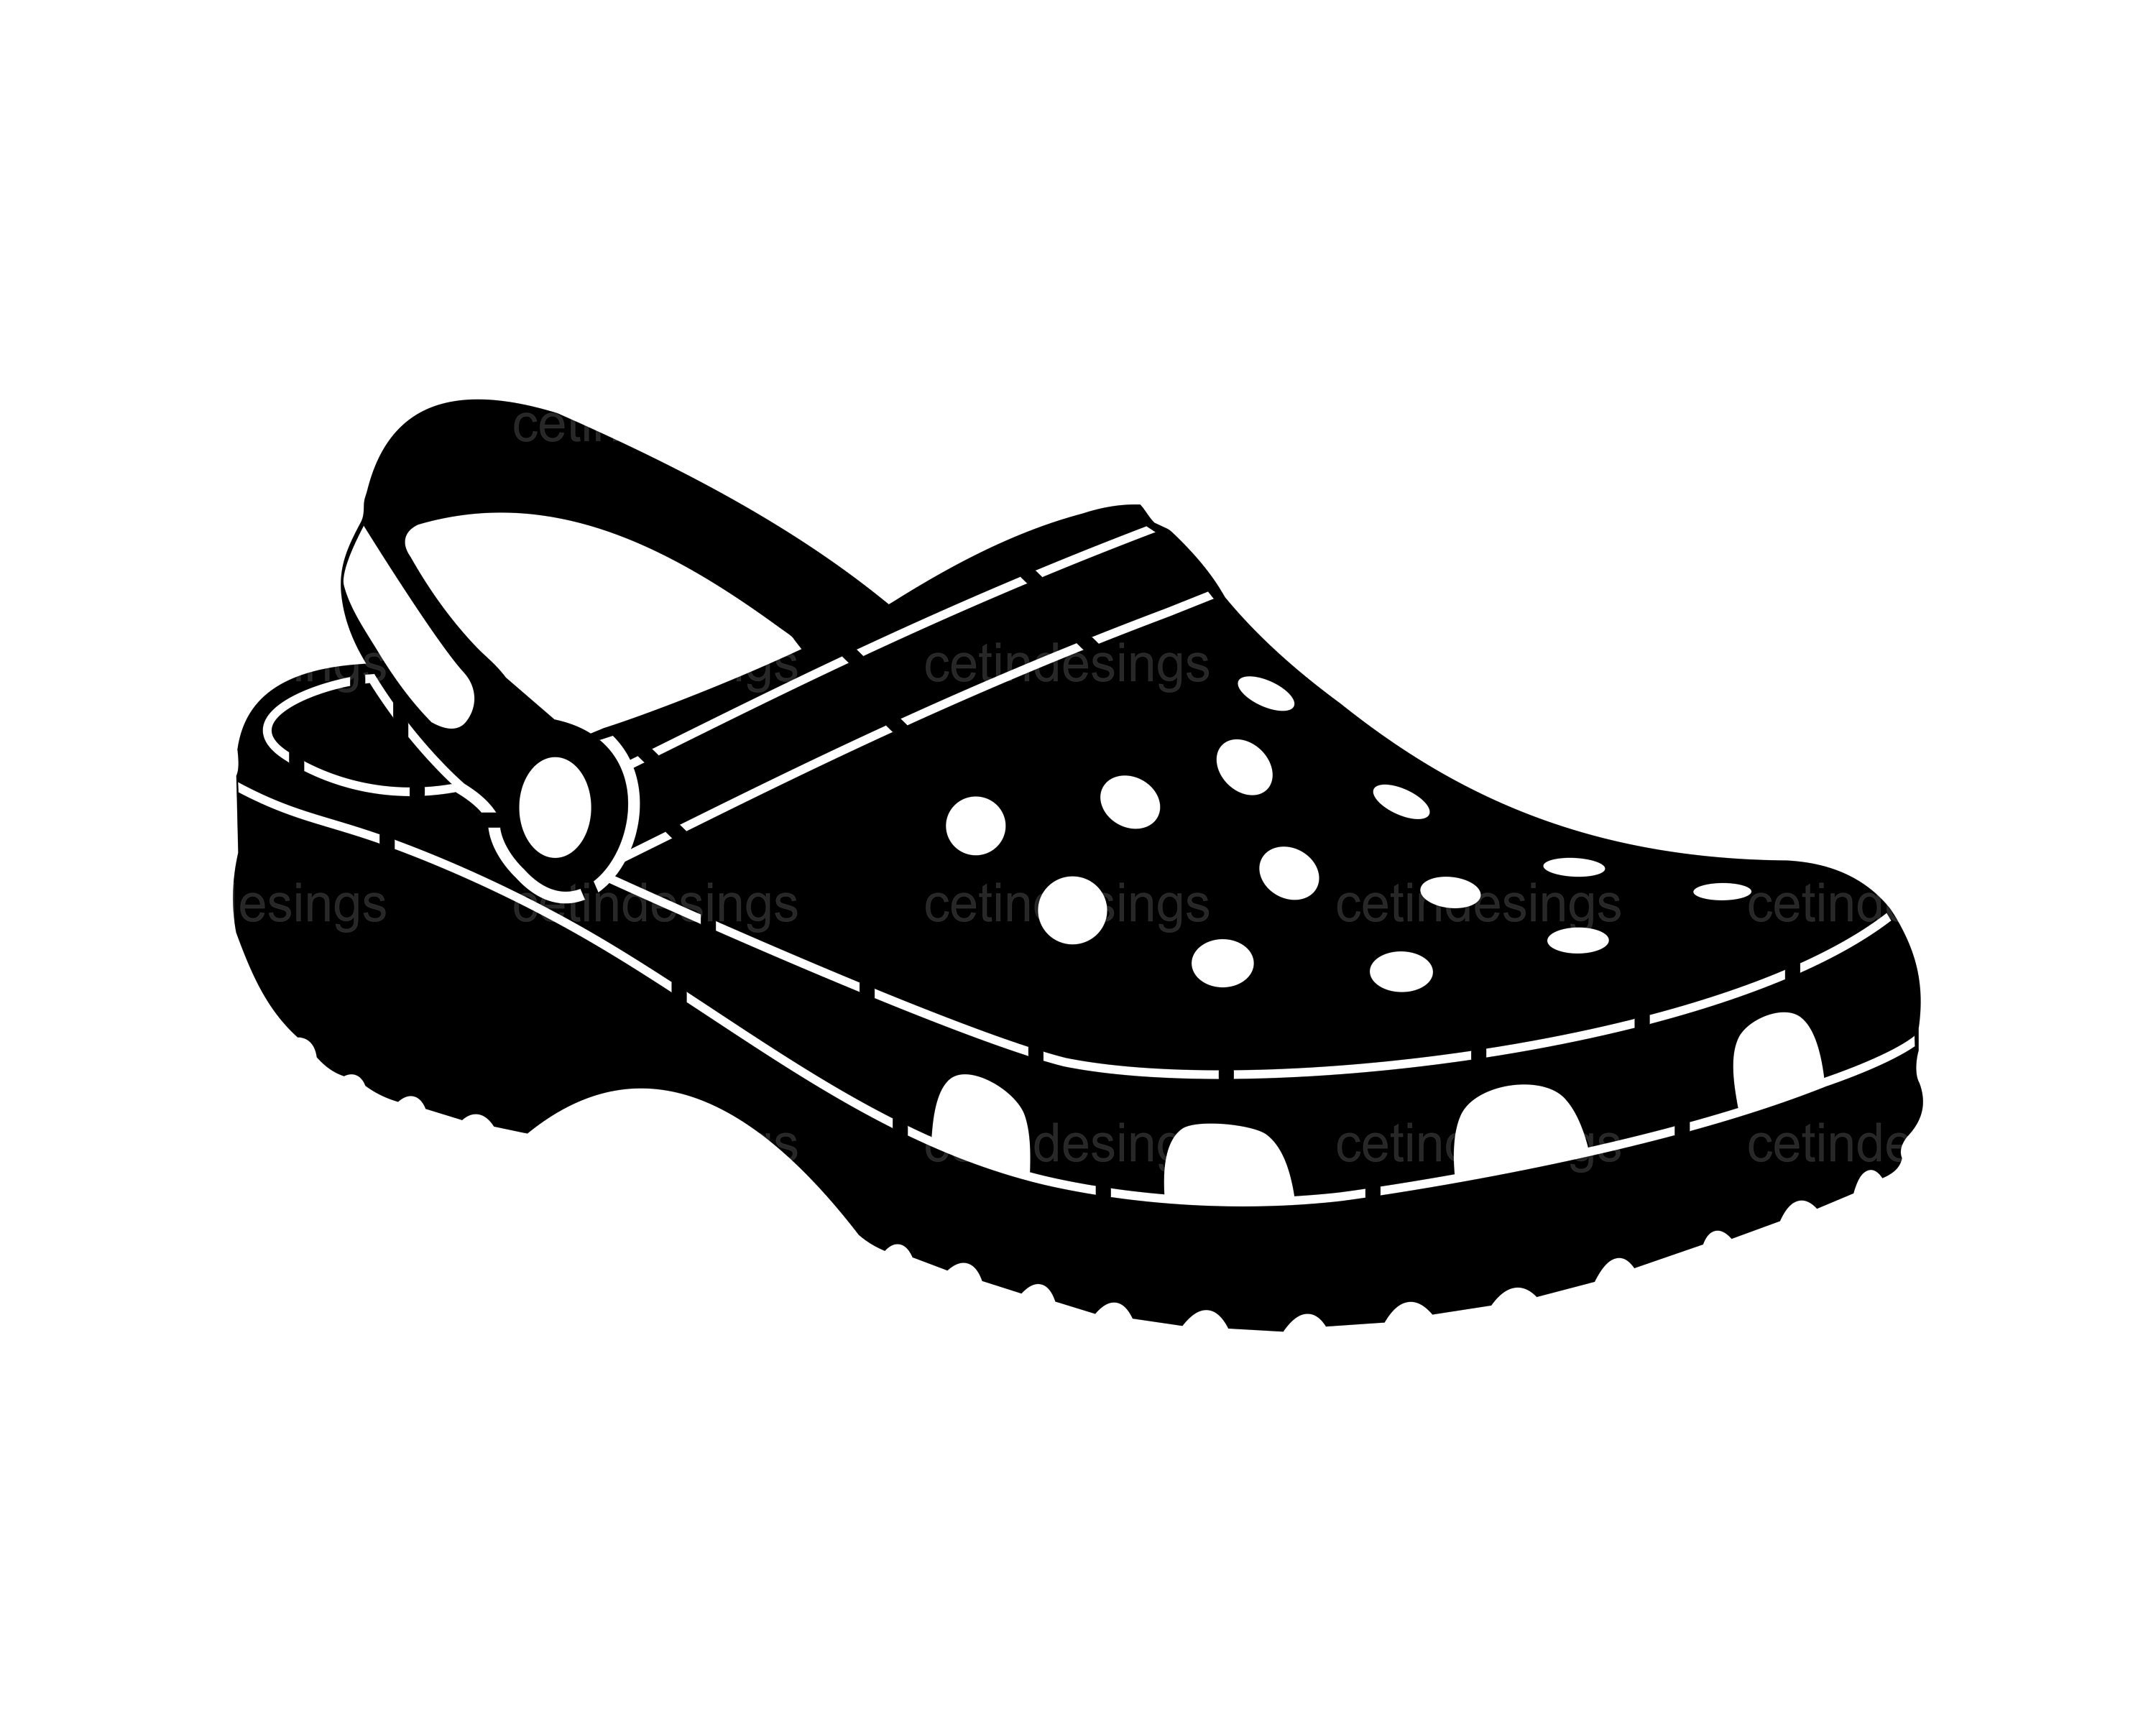 Croc Shoes SVG Sticker Decal Cricut Cut File Clipart Vector ...